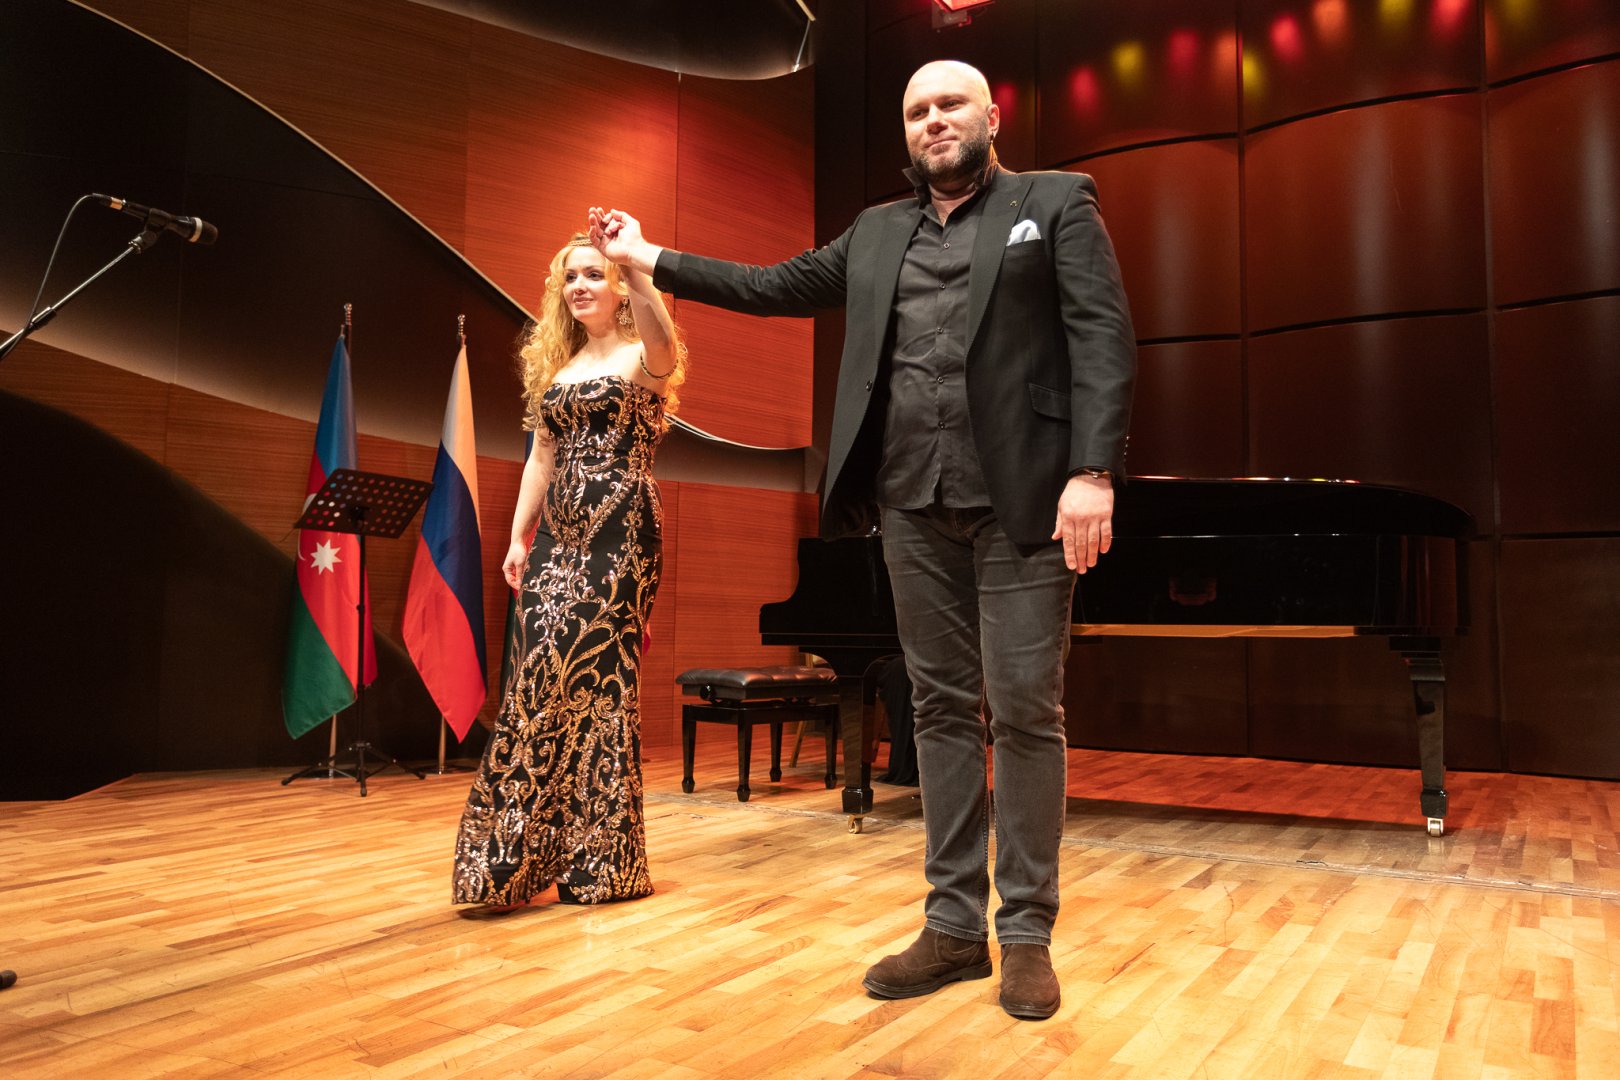 Концертной программой в Баку отмечено 300-летие Российской академии наук (ФОТО)